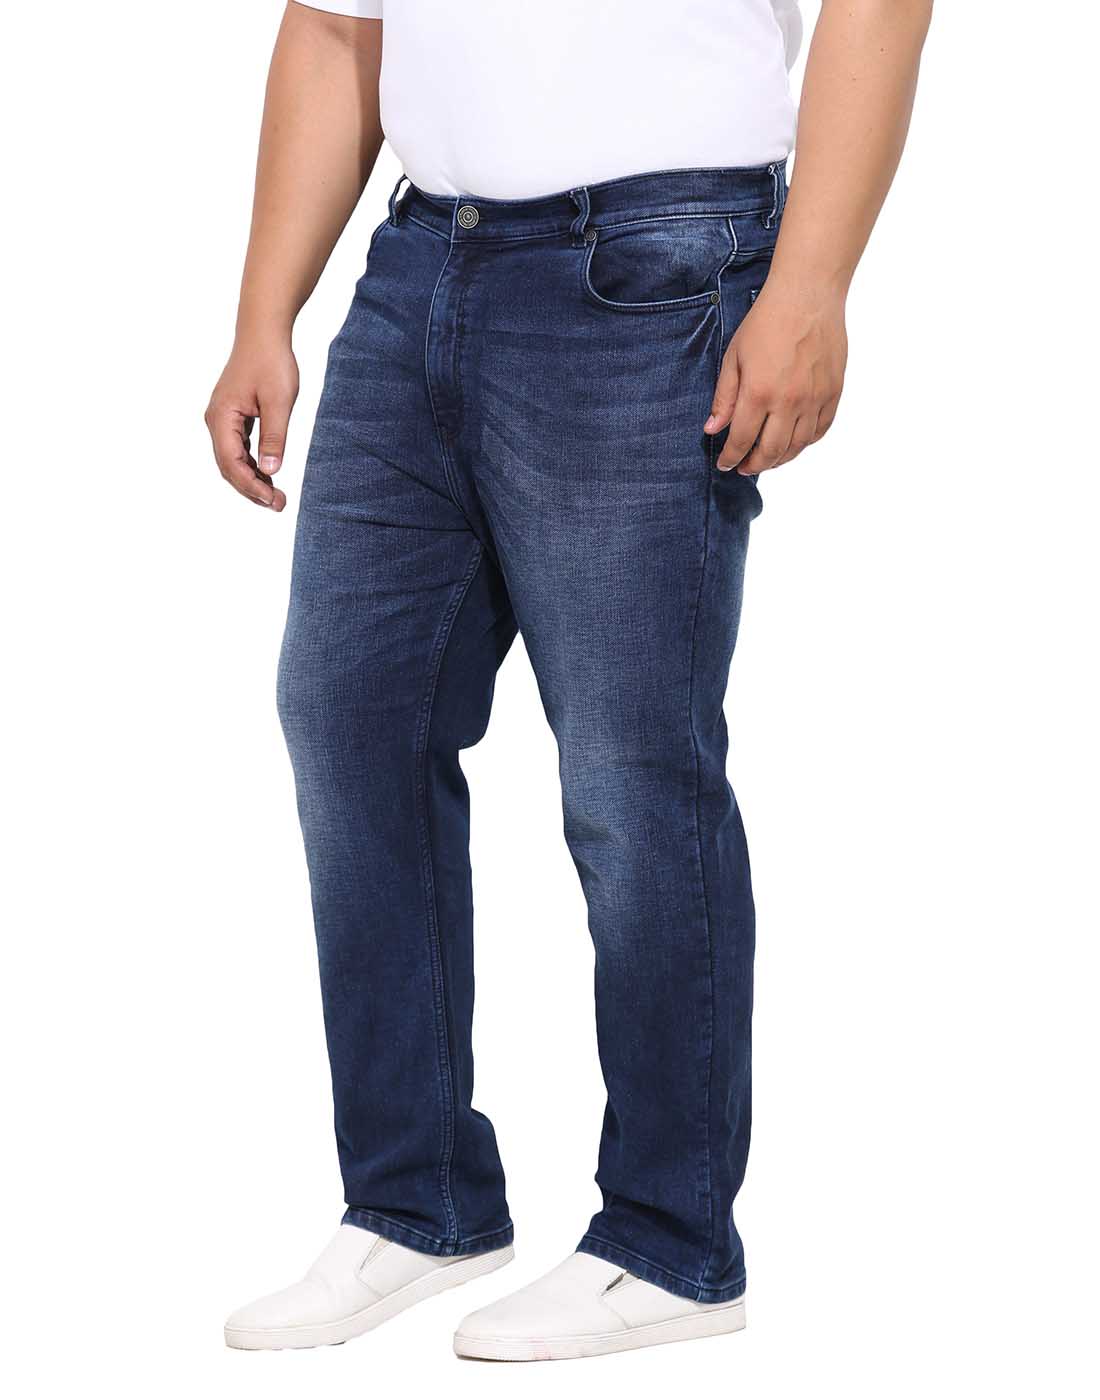 bottomwear/jeans/BEPLJPJ15151/bepljpj15151-2.jpg